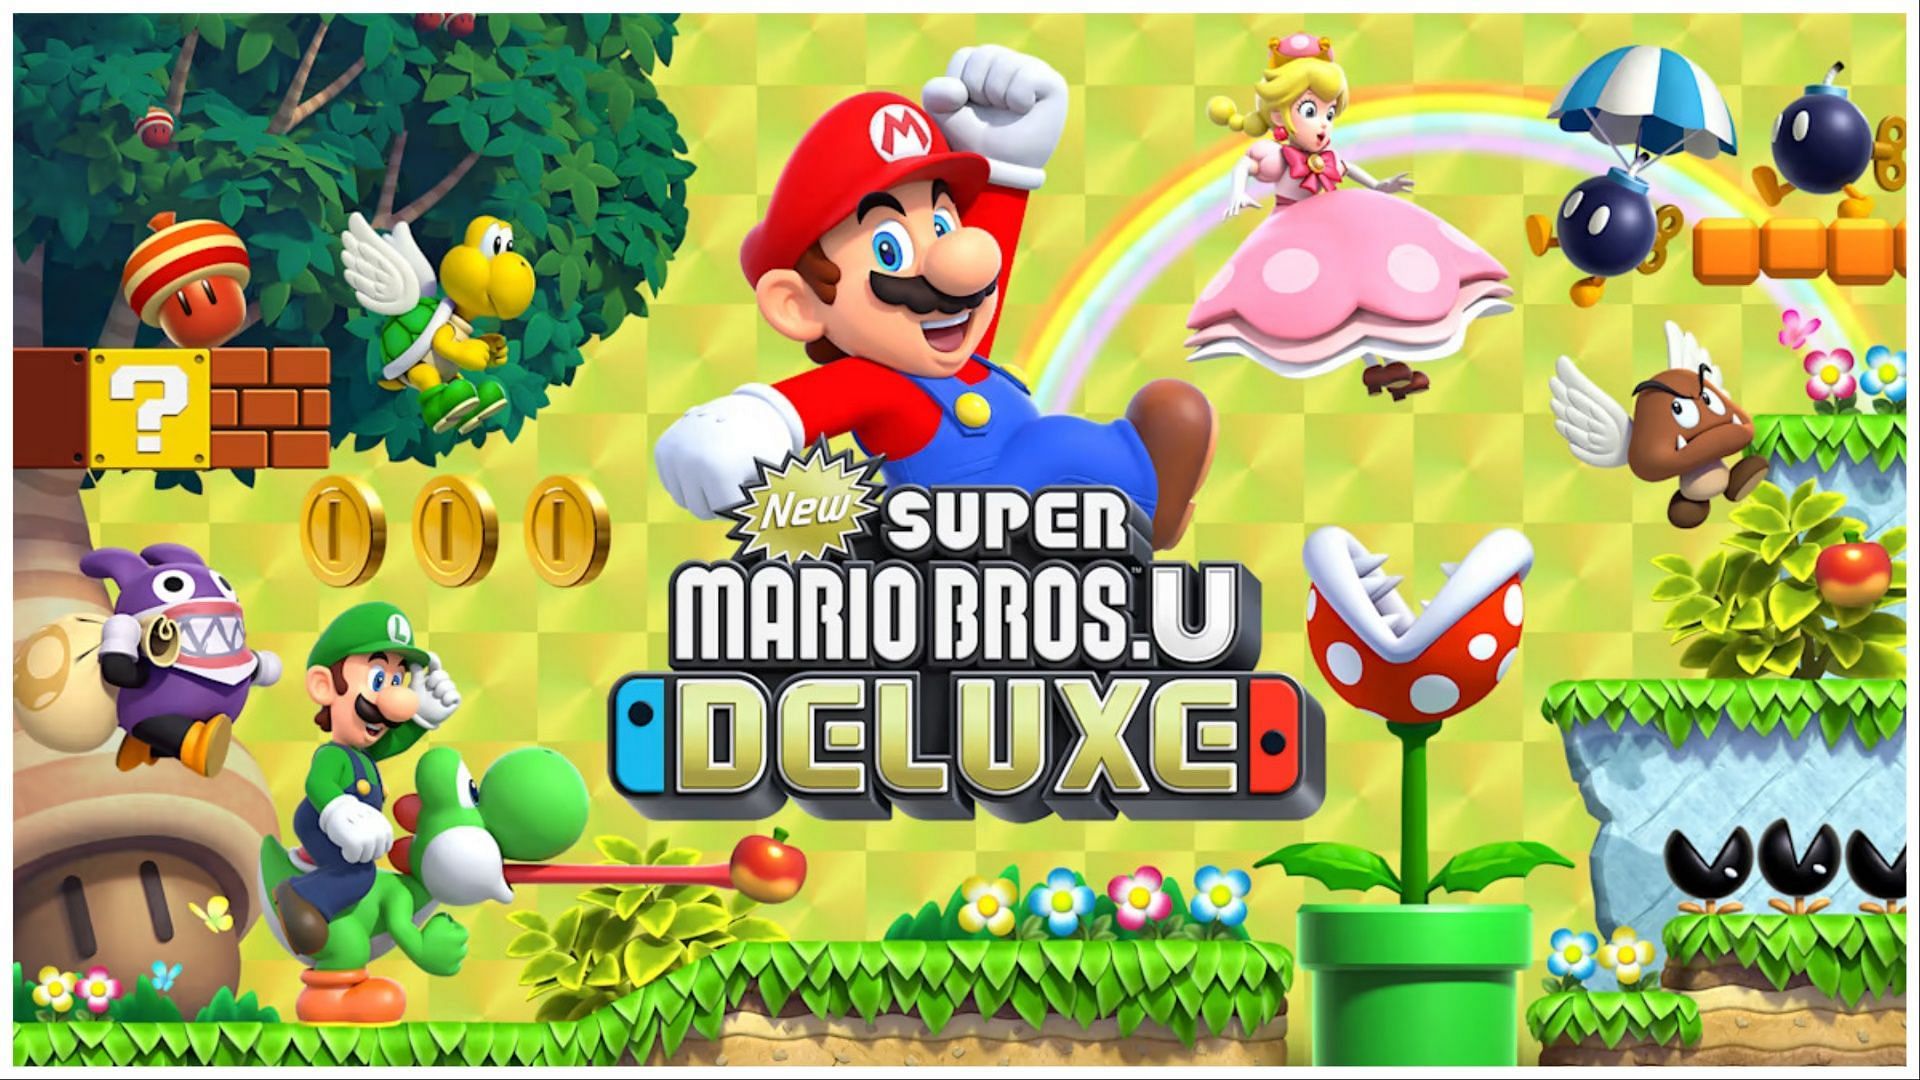 New Super Mario Bros. U Deluxe (Image via Nintendo)